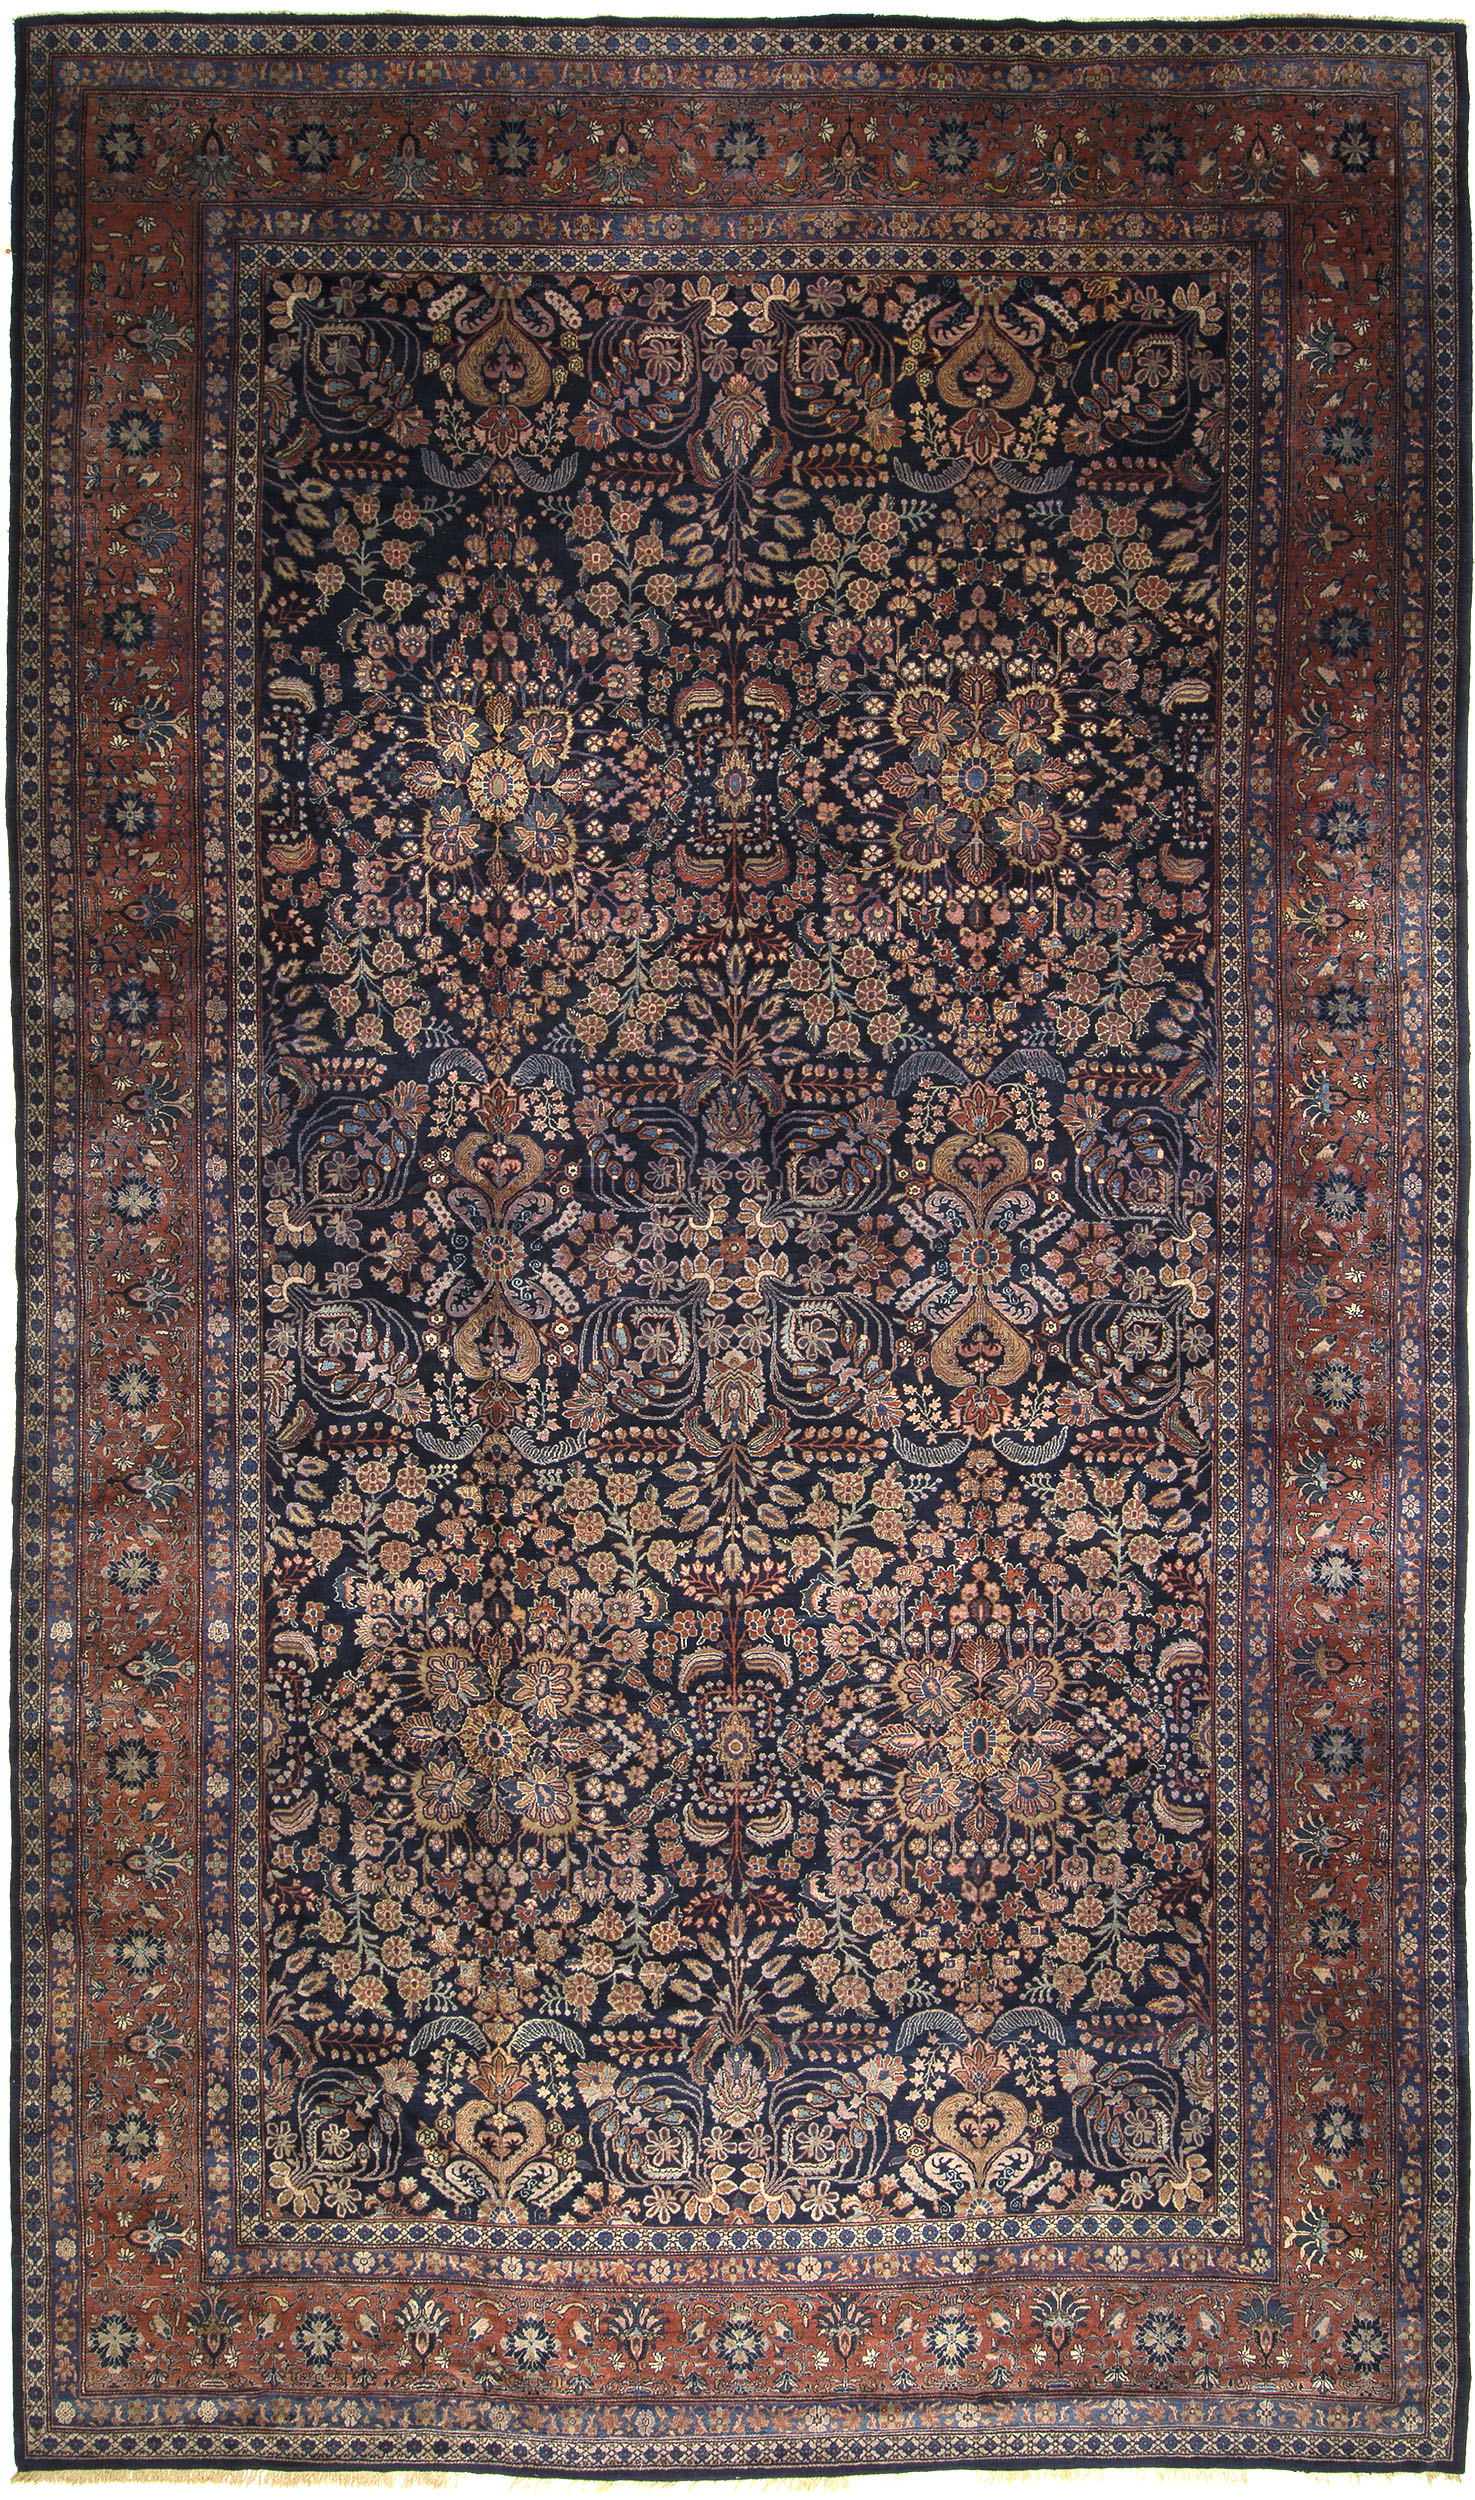 Mahajeran Sarouk Carpet 21' 8" x 12' 9" 